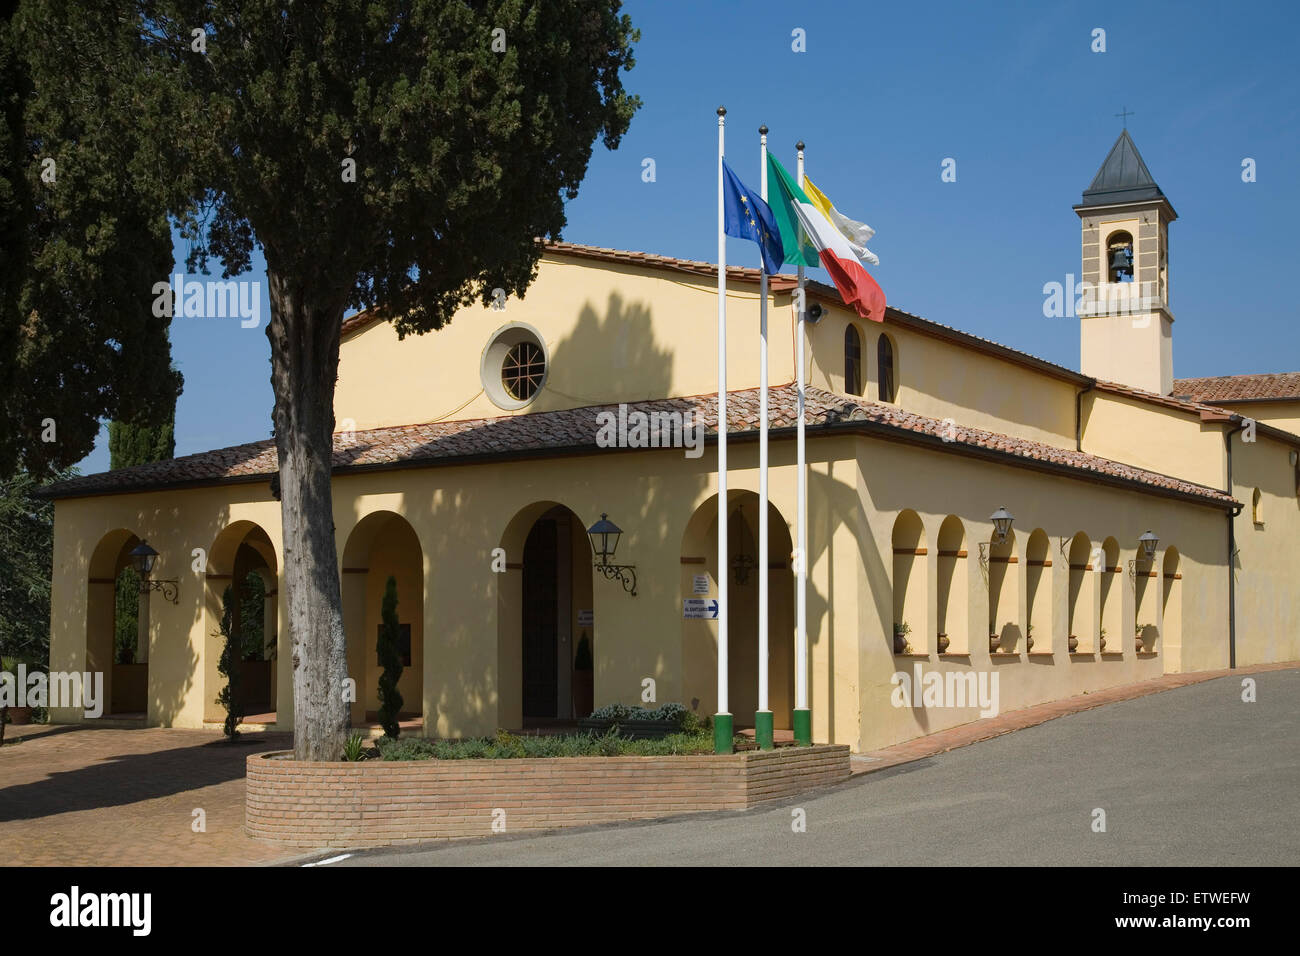 europe, italy, tuscany, frassine sanctuary Stock Photo